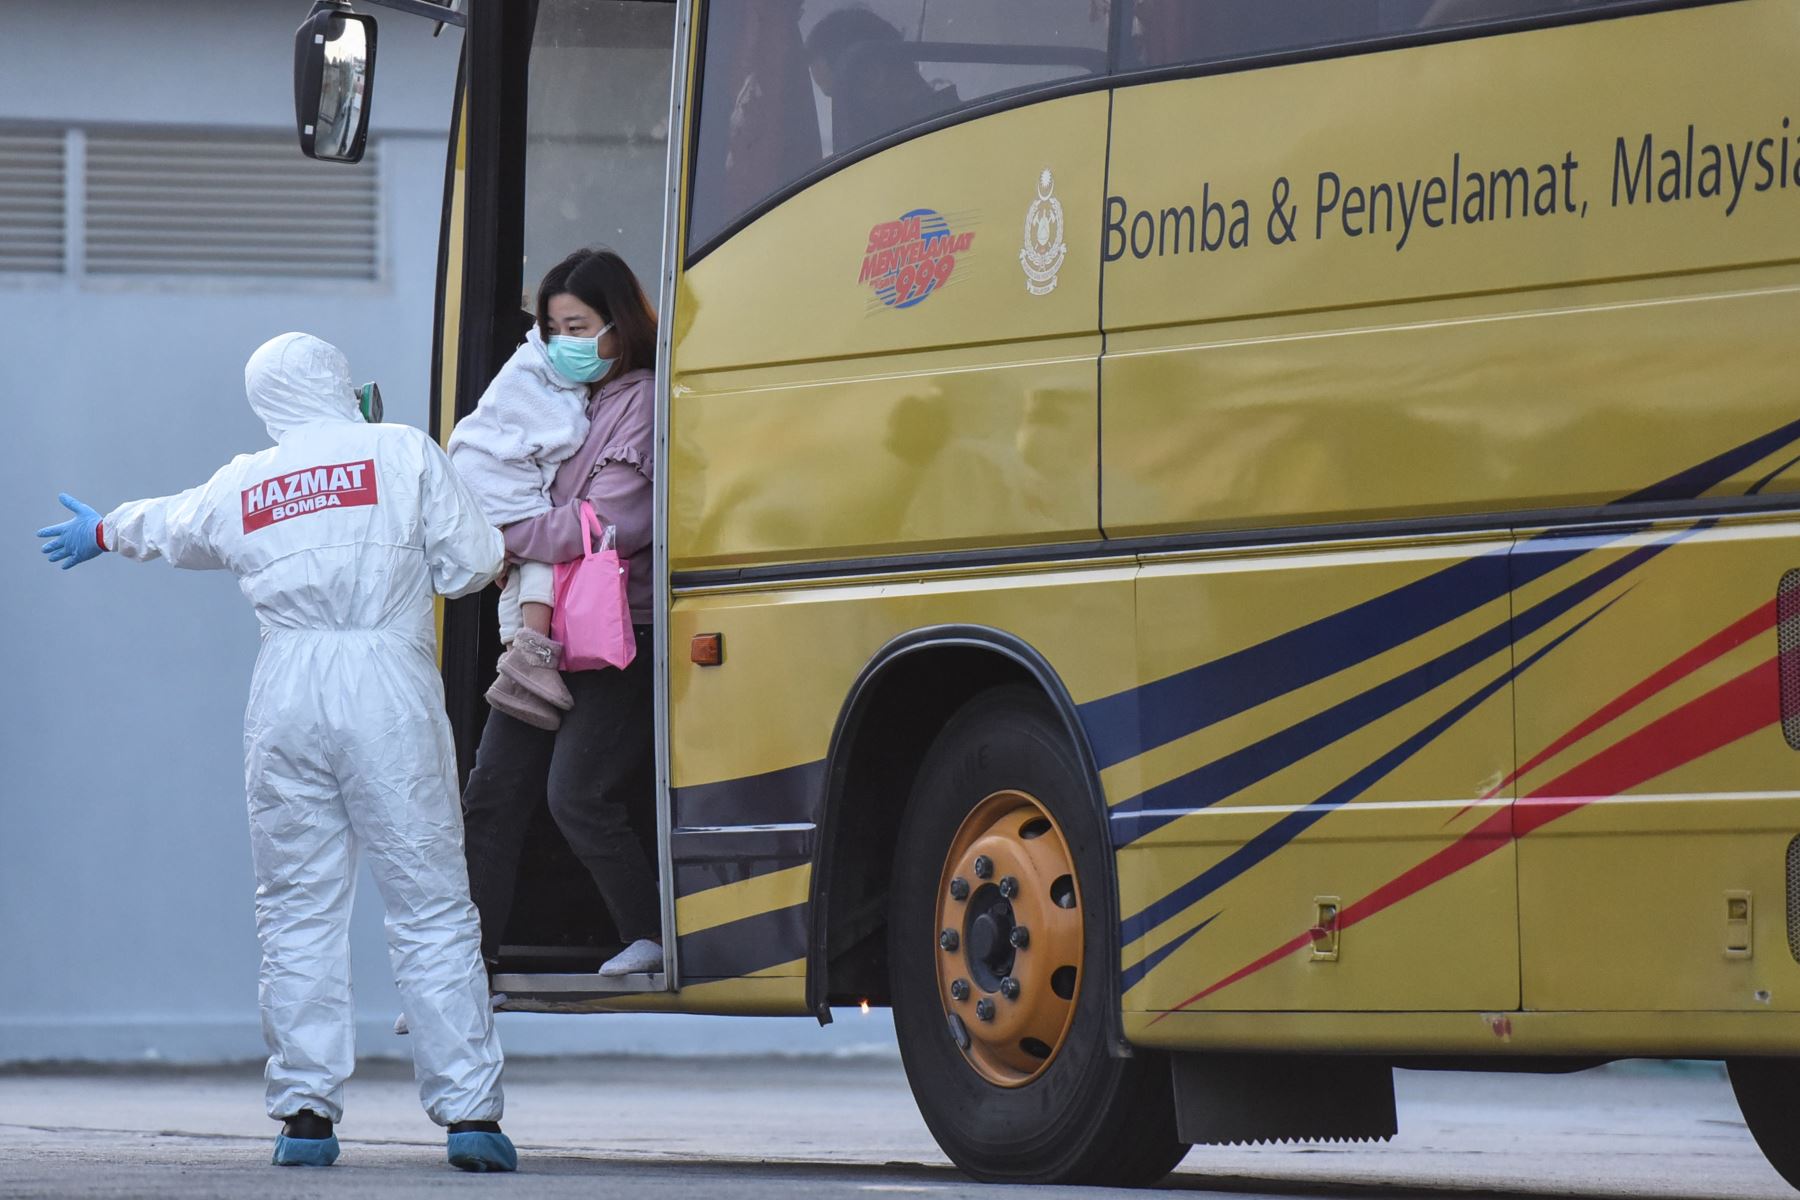 Ciudadanos de Malasia, evacuados de la ciudad china de Wuhan, el epicentro del nuevo brote de coronavirus COVID-19, son dirigidos desde un autobús  cuando llegan al aeropuerto internacional de Kuala Lumpur. Foto: AFP